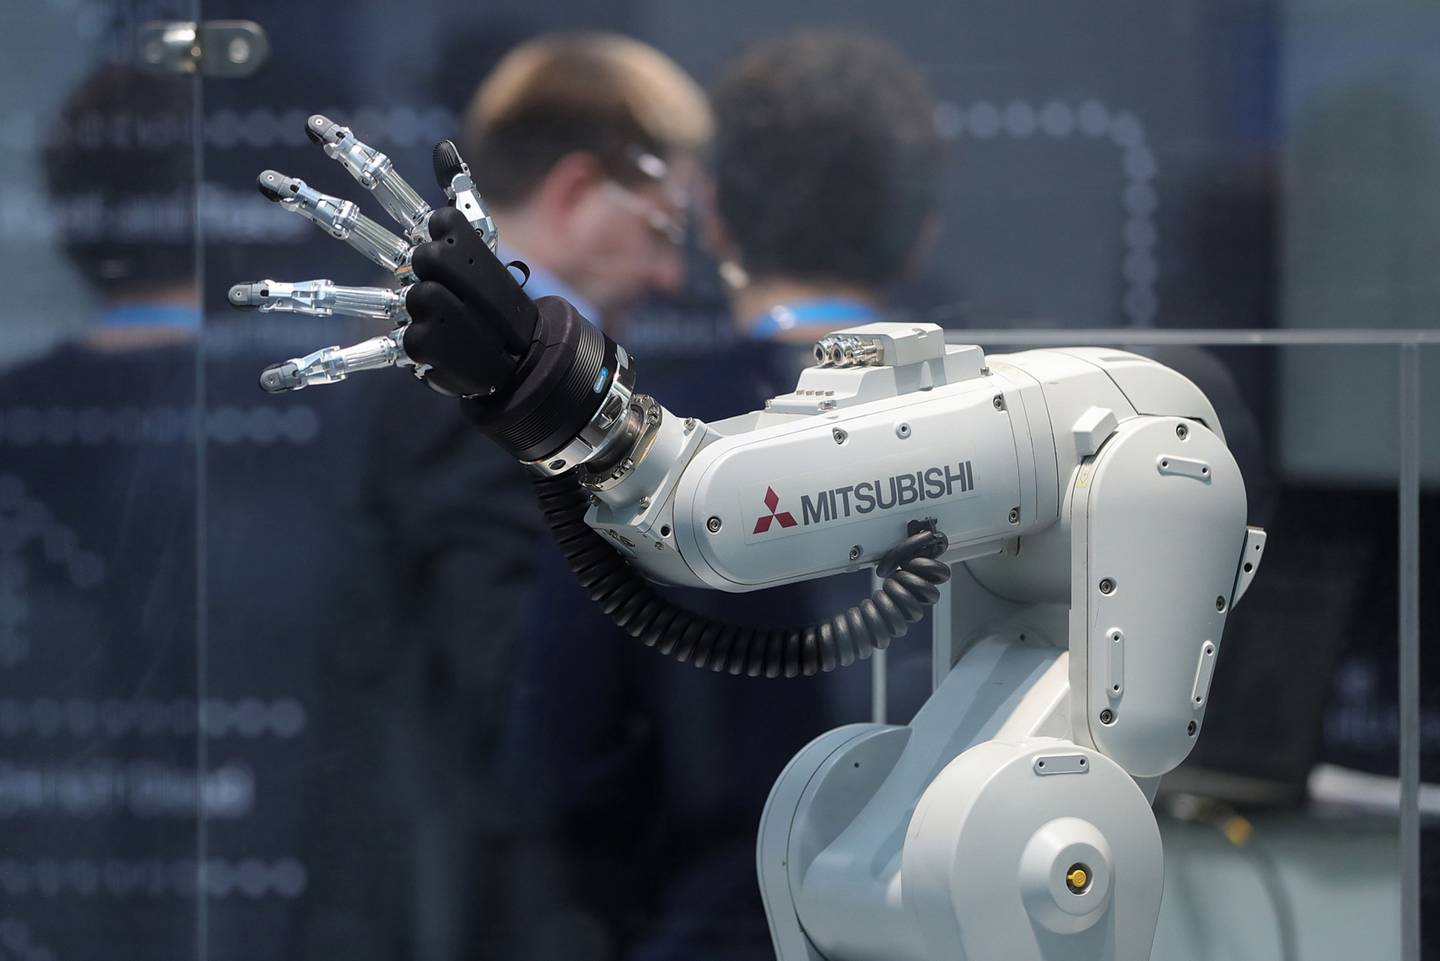 Un brazo robótico Mitsubishi Melfa, fabricado por Mitsubishi Electric Corp., se exhibe en la conferencia Internet of Things (IoT) de Robert Bosch GmbH en Berlín, Alemania, el miércoles 21 de febrero de 2018.